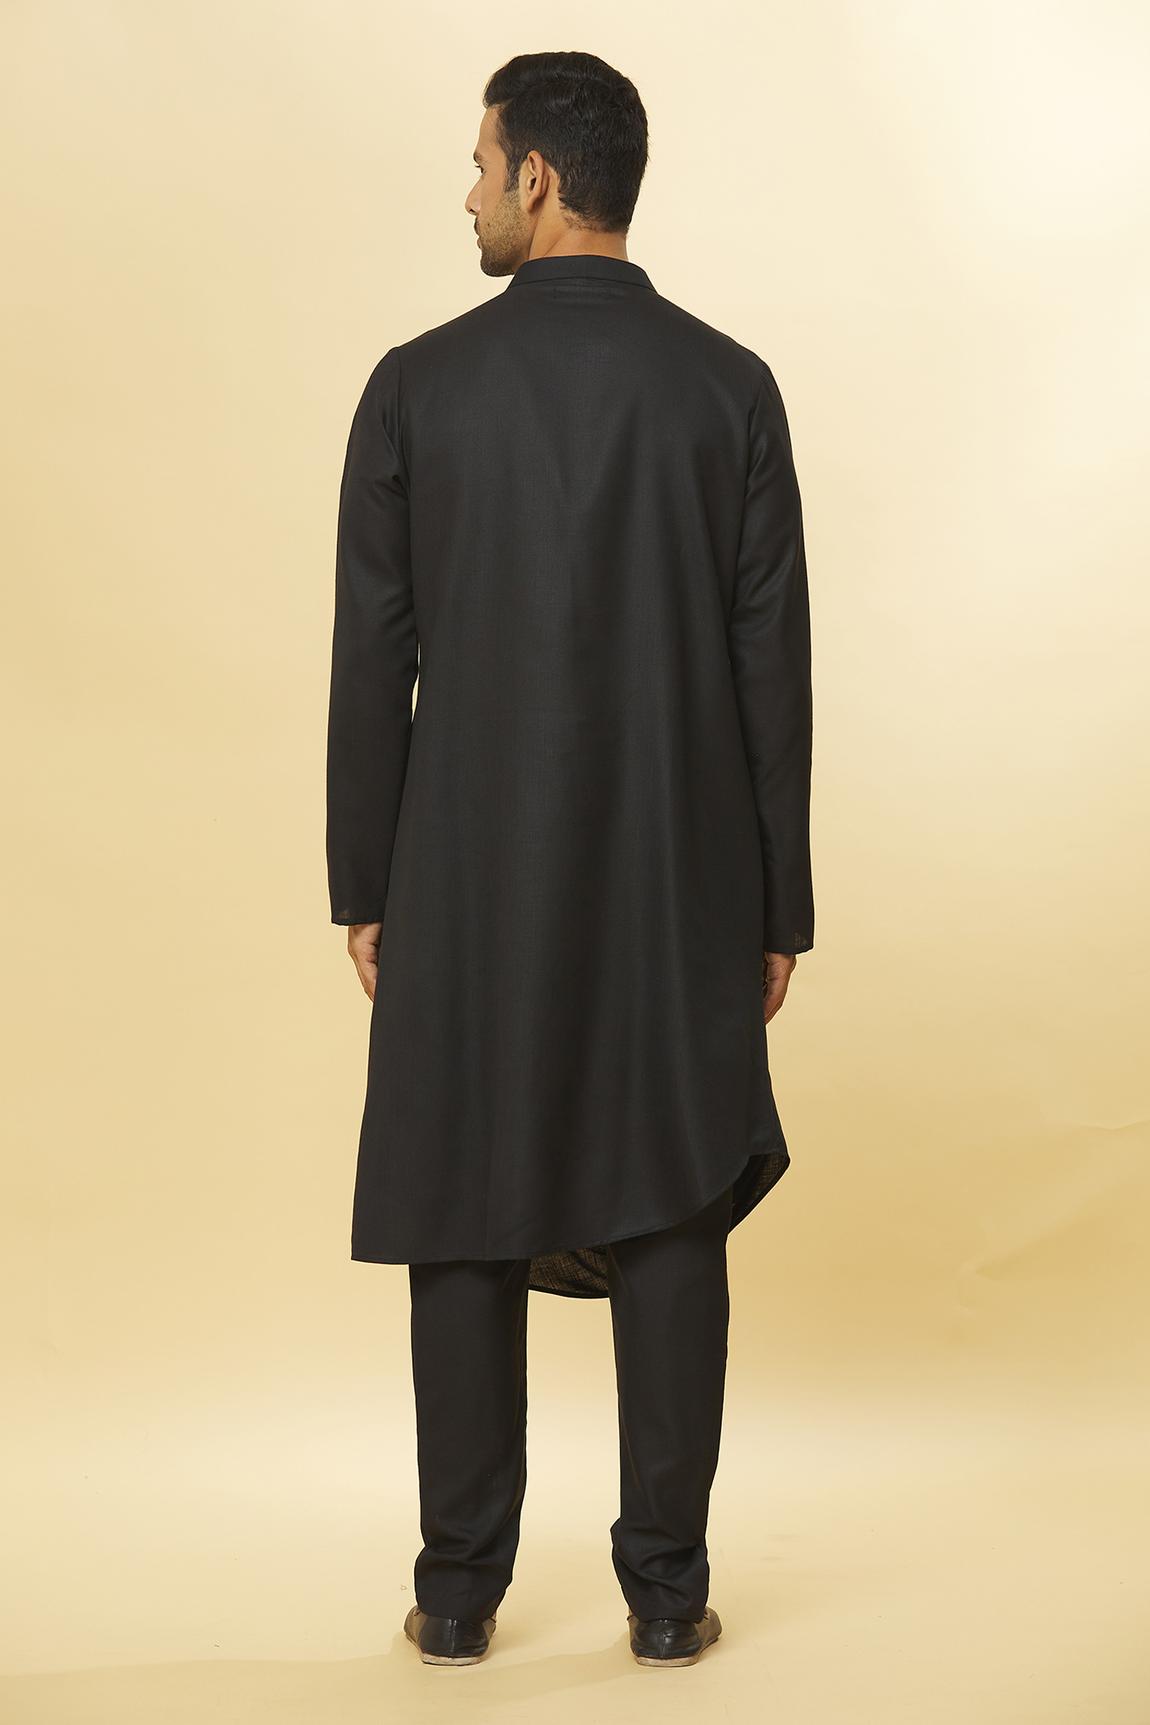 Tatvam Samaroh Kurta And Pyjama Set For Men